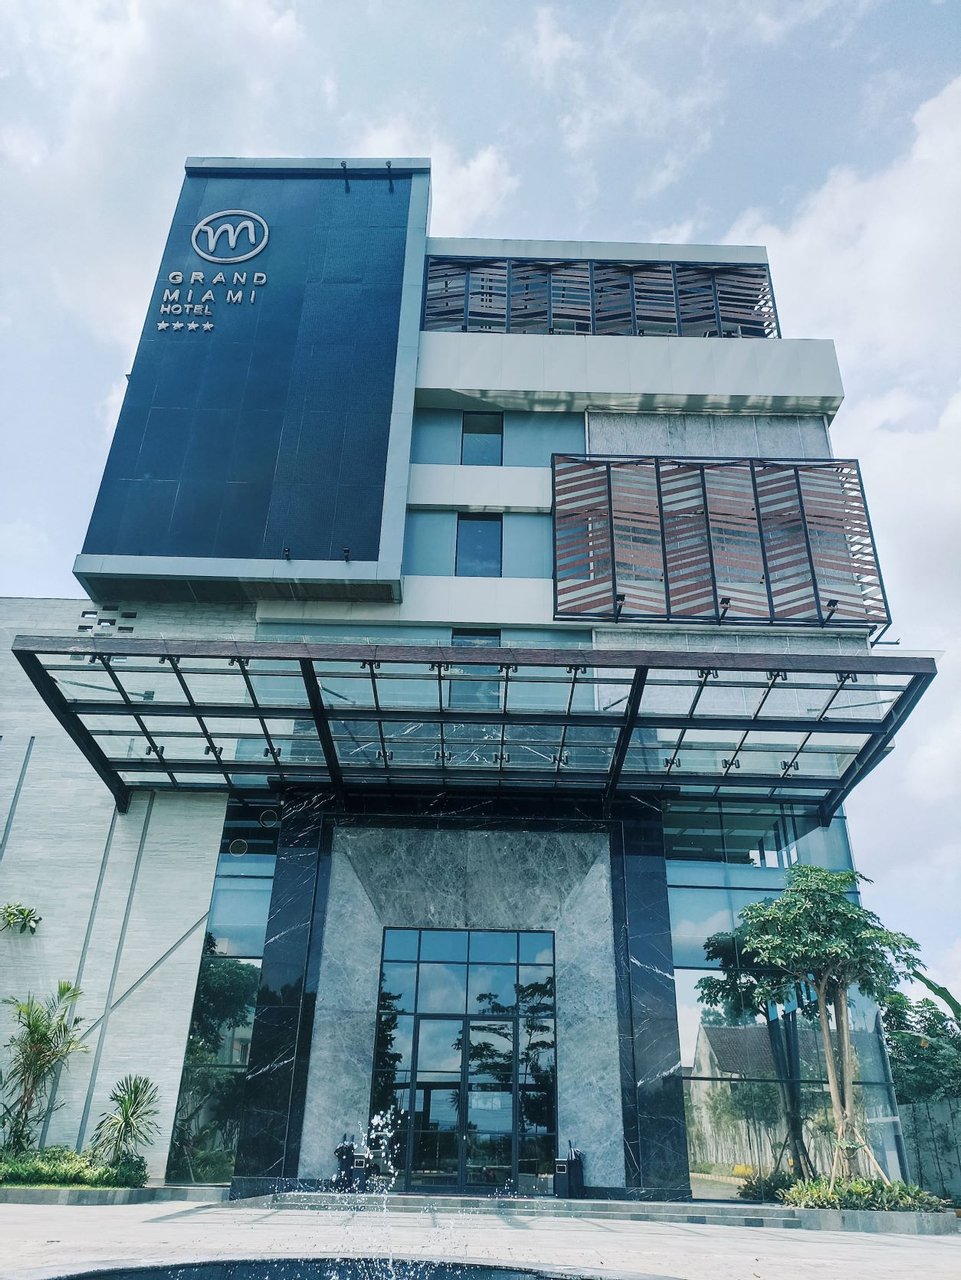 Exterior & Views 1, GRAND MIAMI HOTEL, Malang